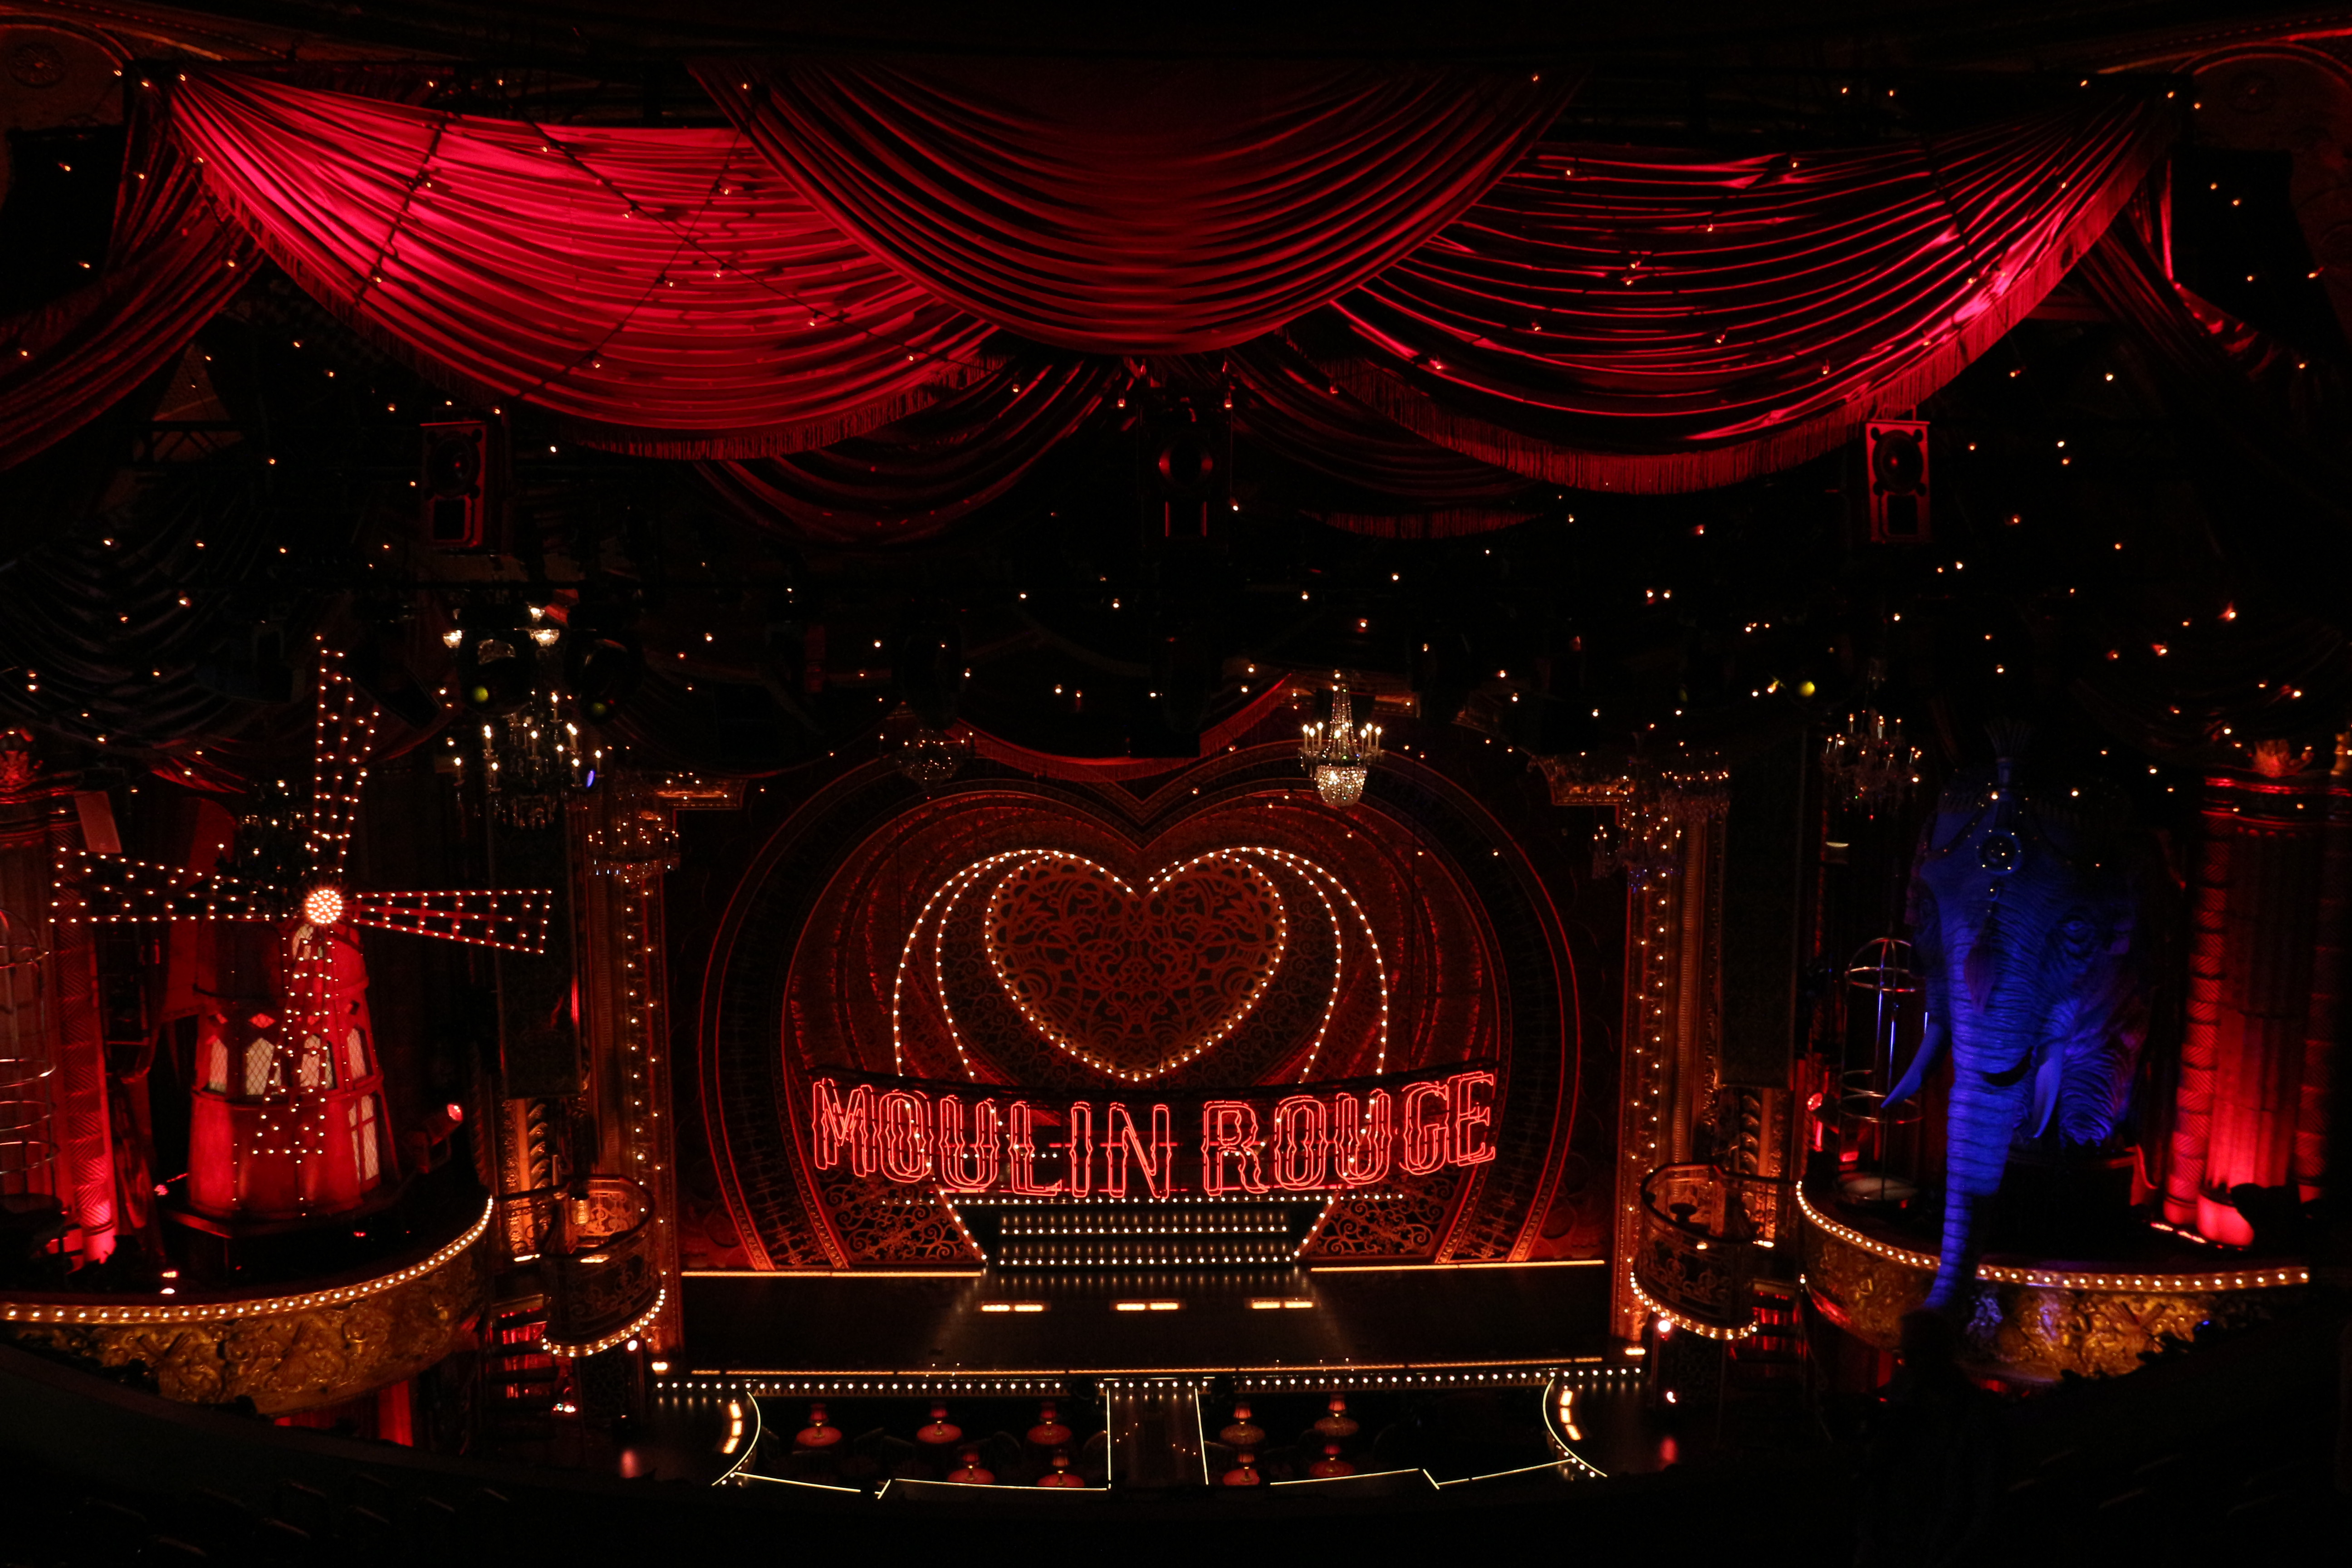 Moulin Rouge set